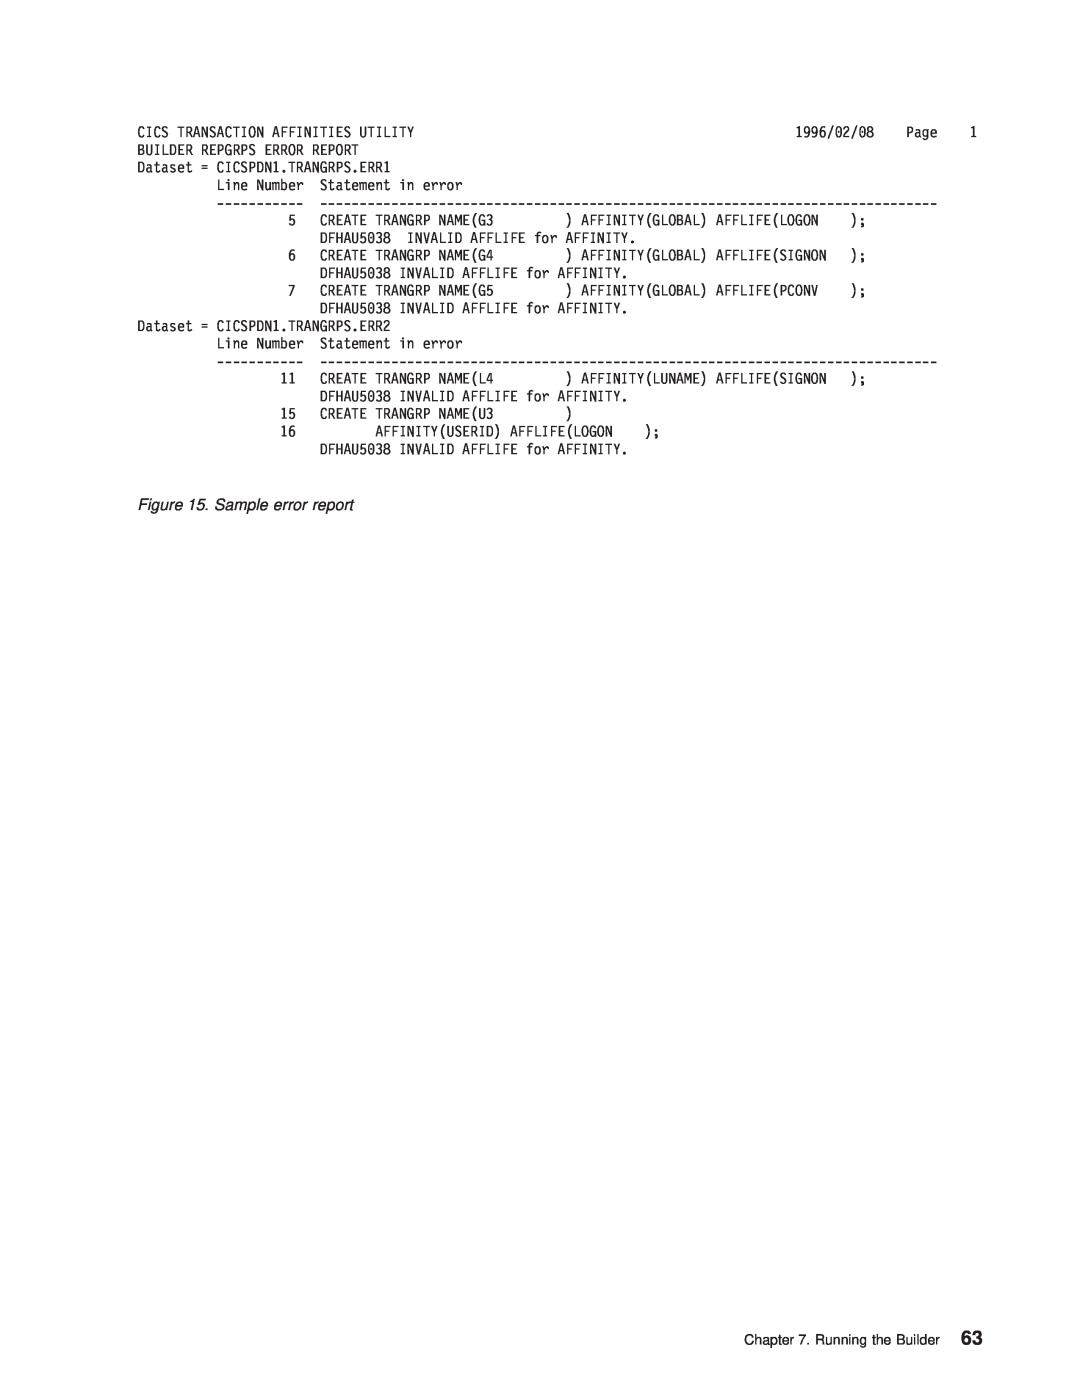 IBM OS manual Sample error report 